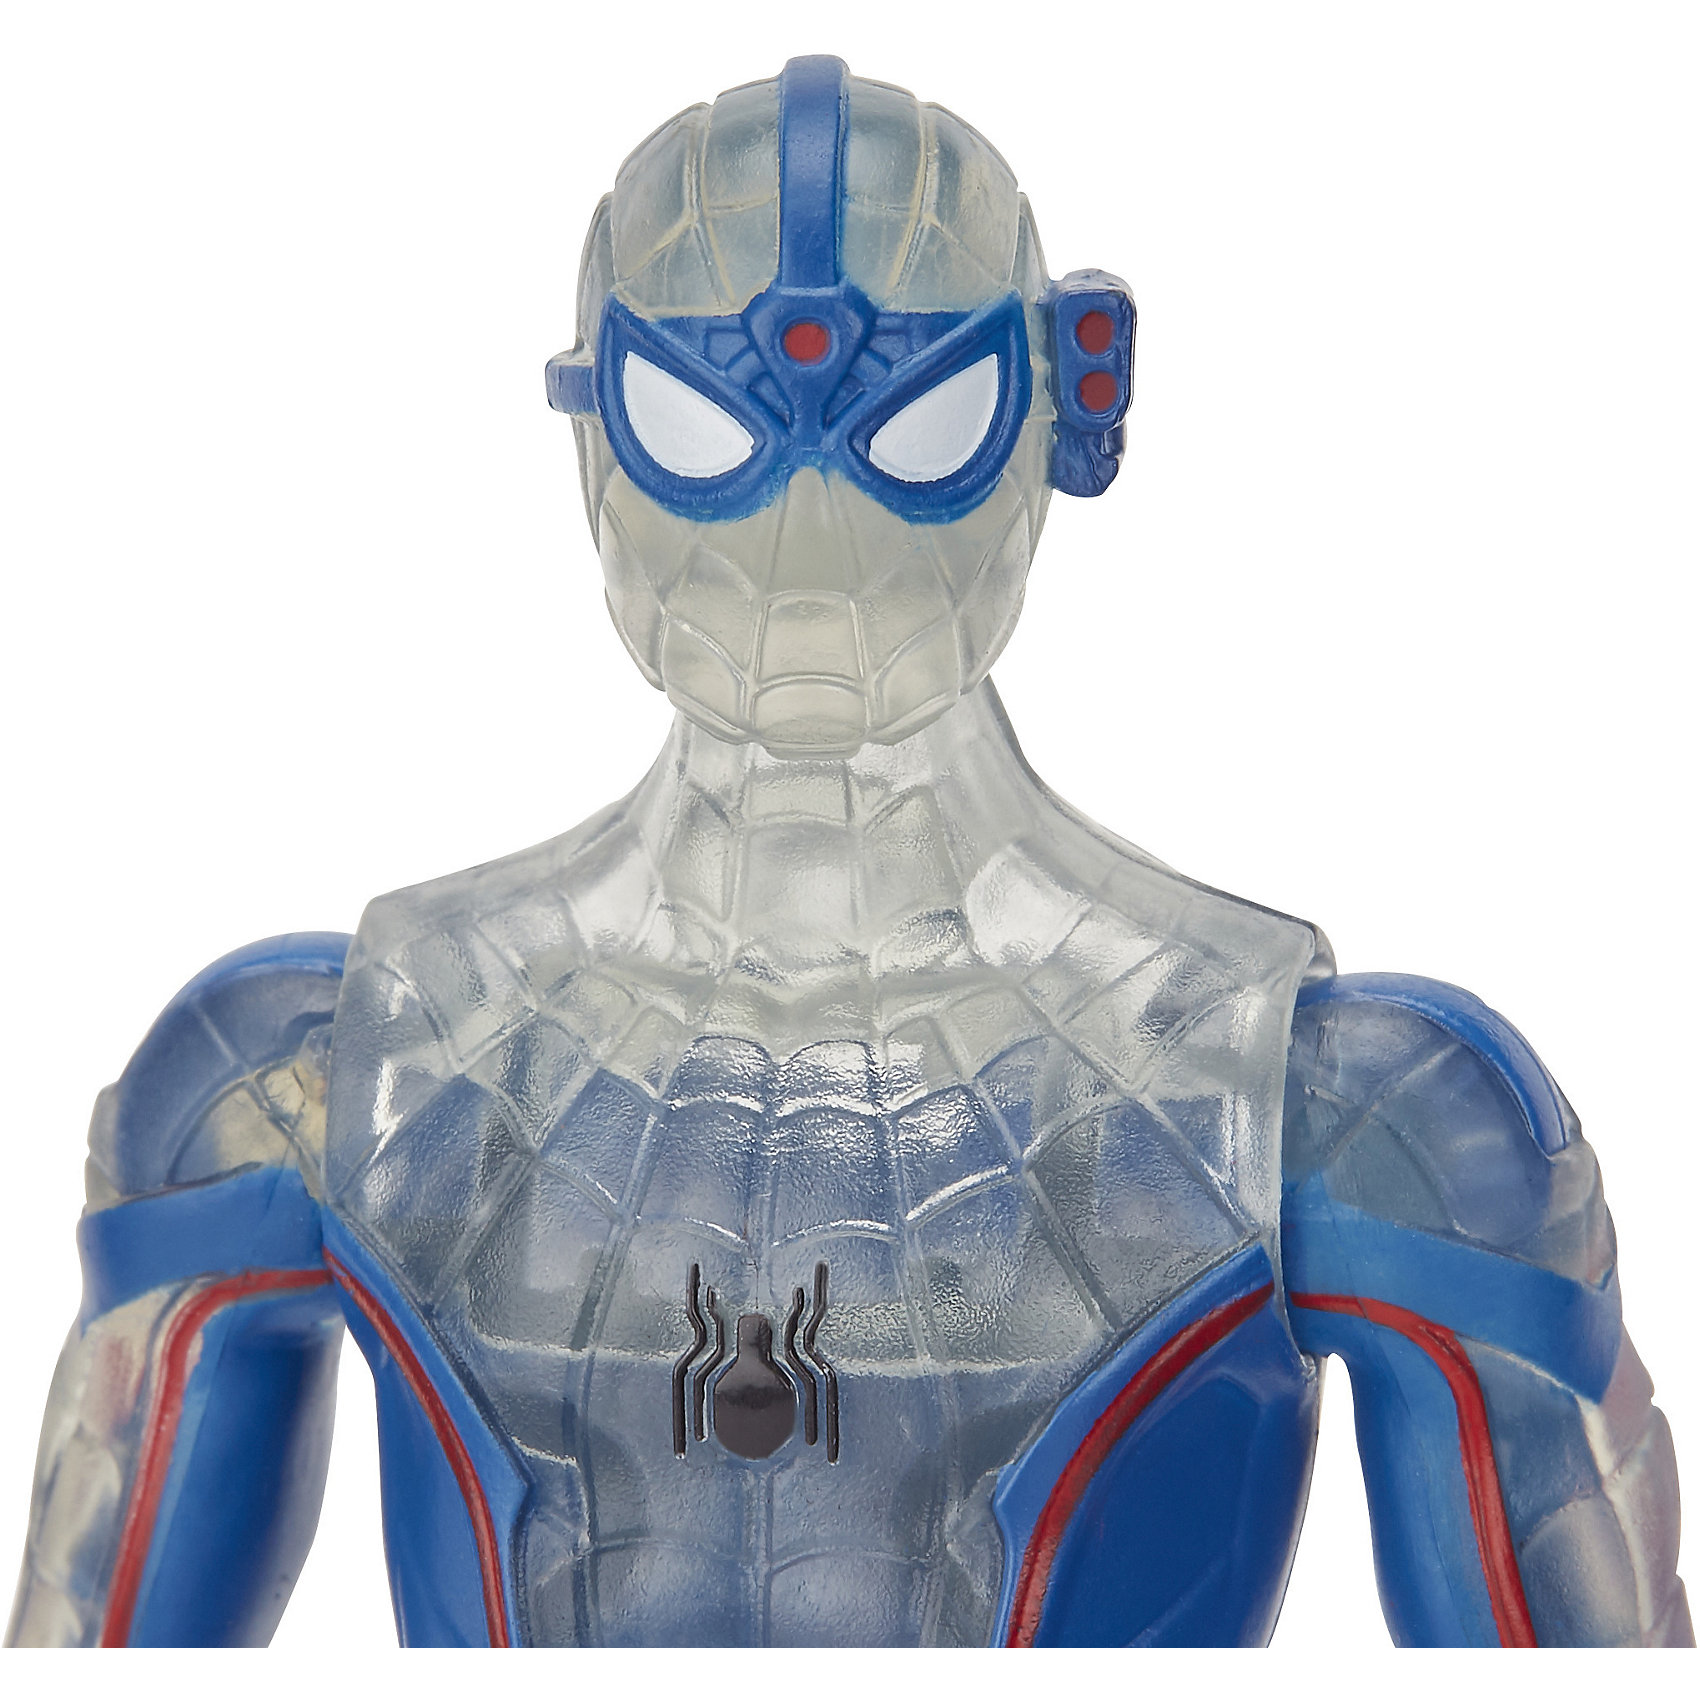 фото Игровая фигурка Spider-Man "Возвращение домой" Человек-Паук под прикрытием, 15 см Hasbro